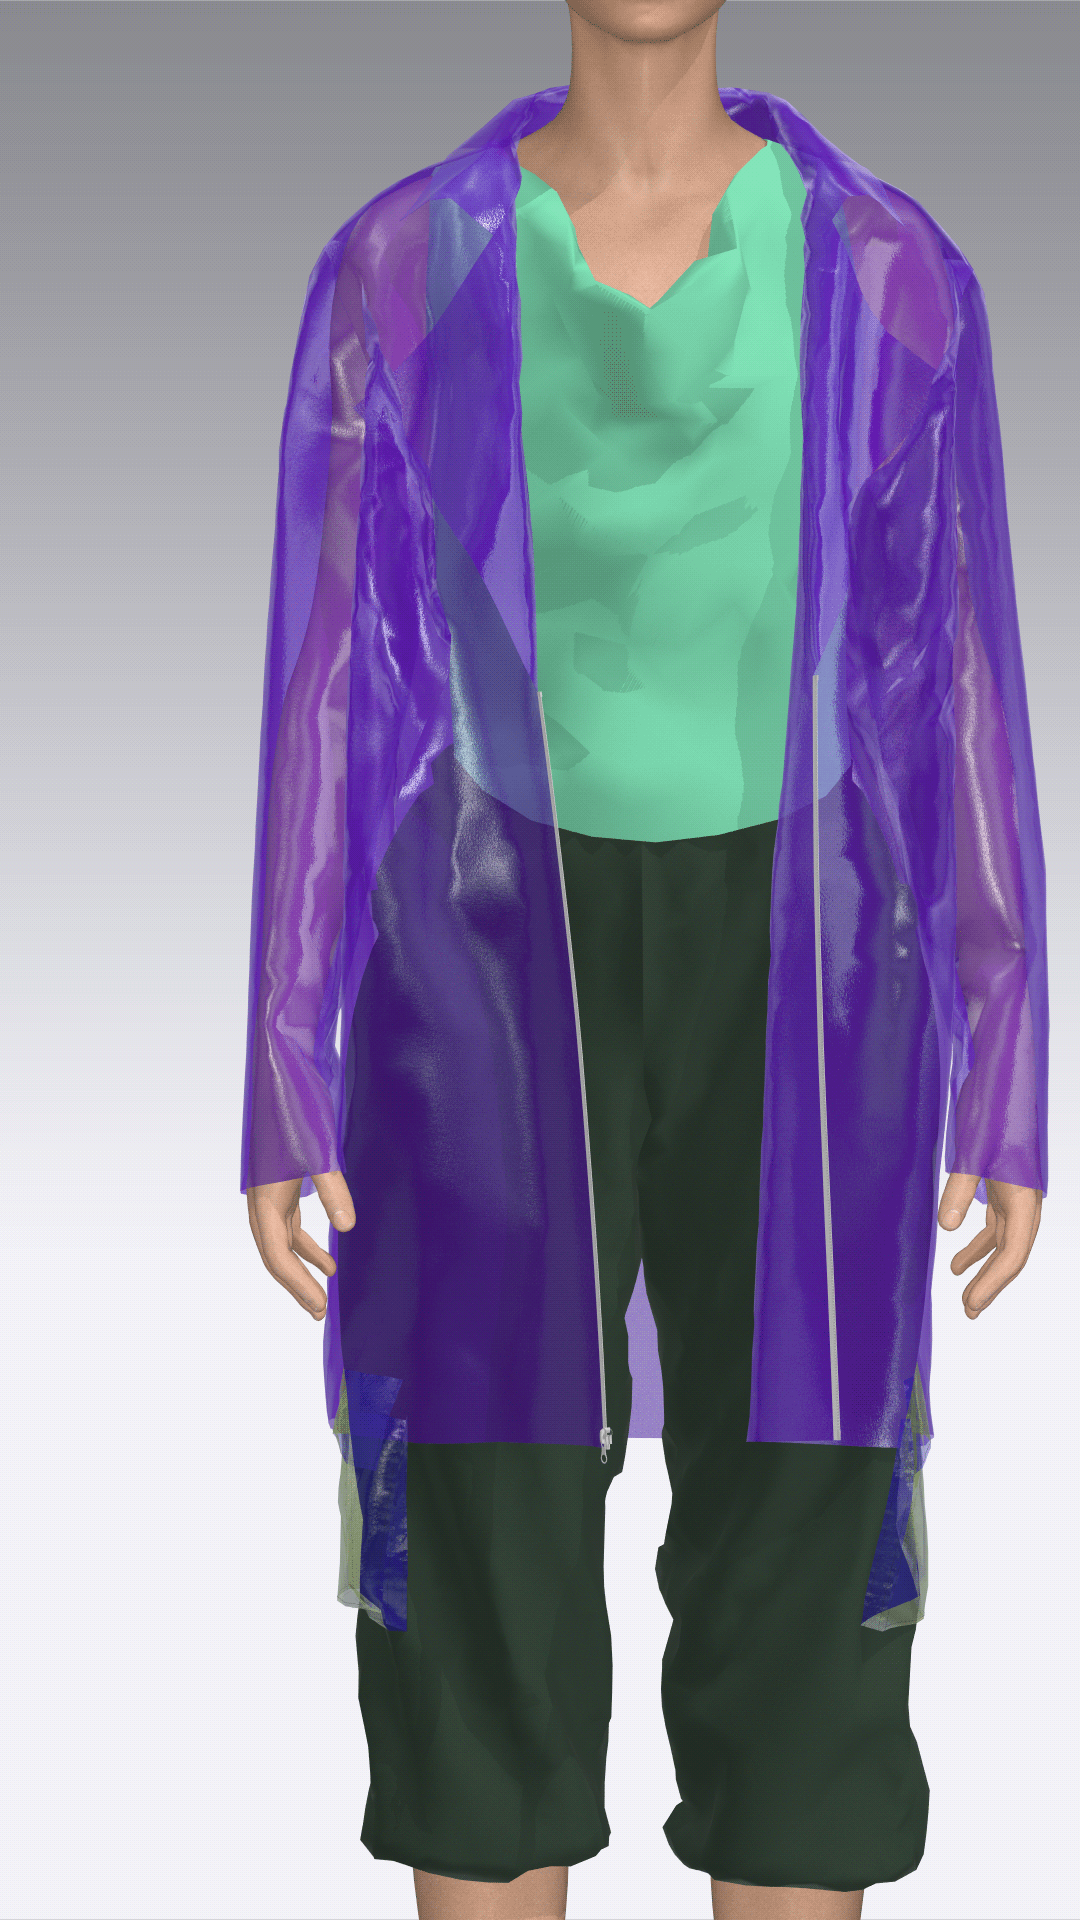 3dart 3DDesign antiutopia Browzwear Clo3d cyber futuristic marvelous designer neon plastic fabric 